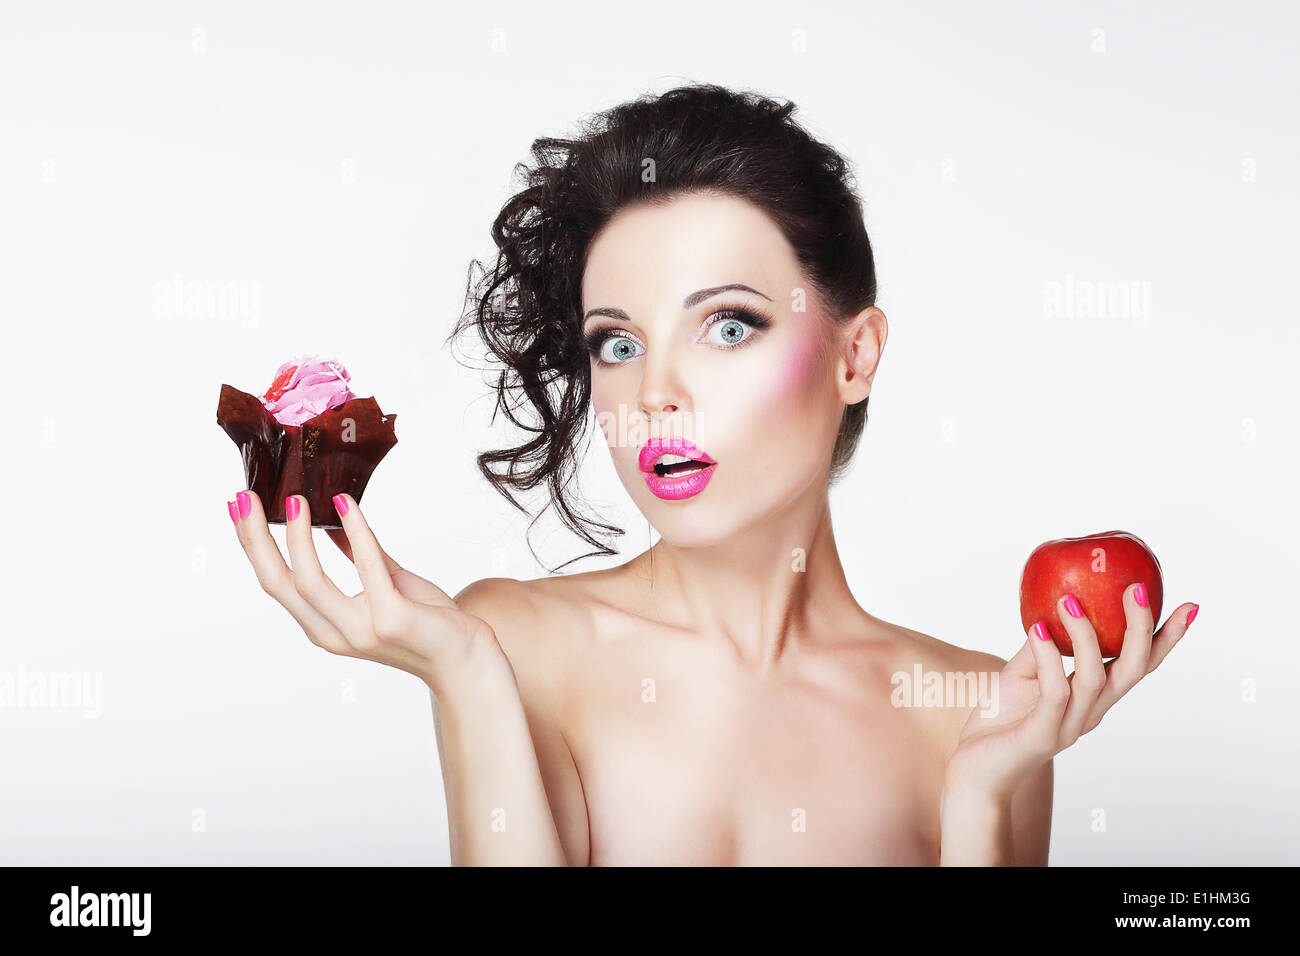 Dieting. Unsure Bewildered Girl Choosing Apple or Cake Stock Photo